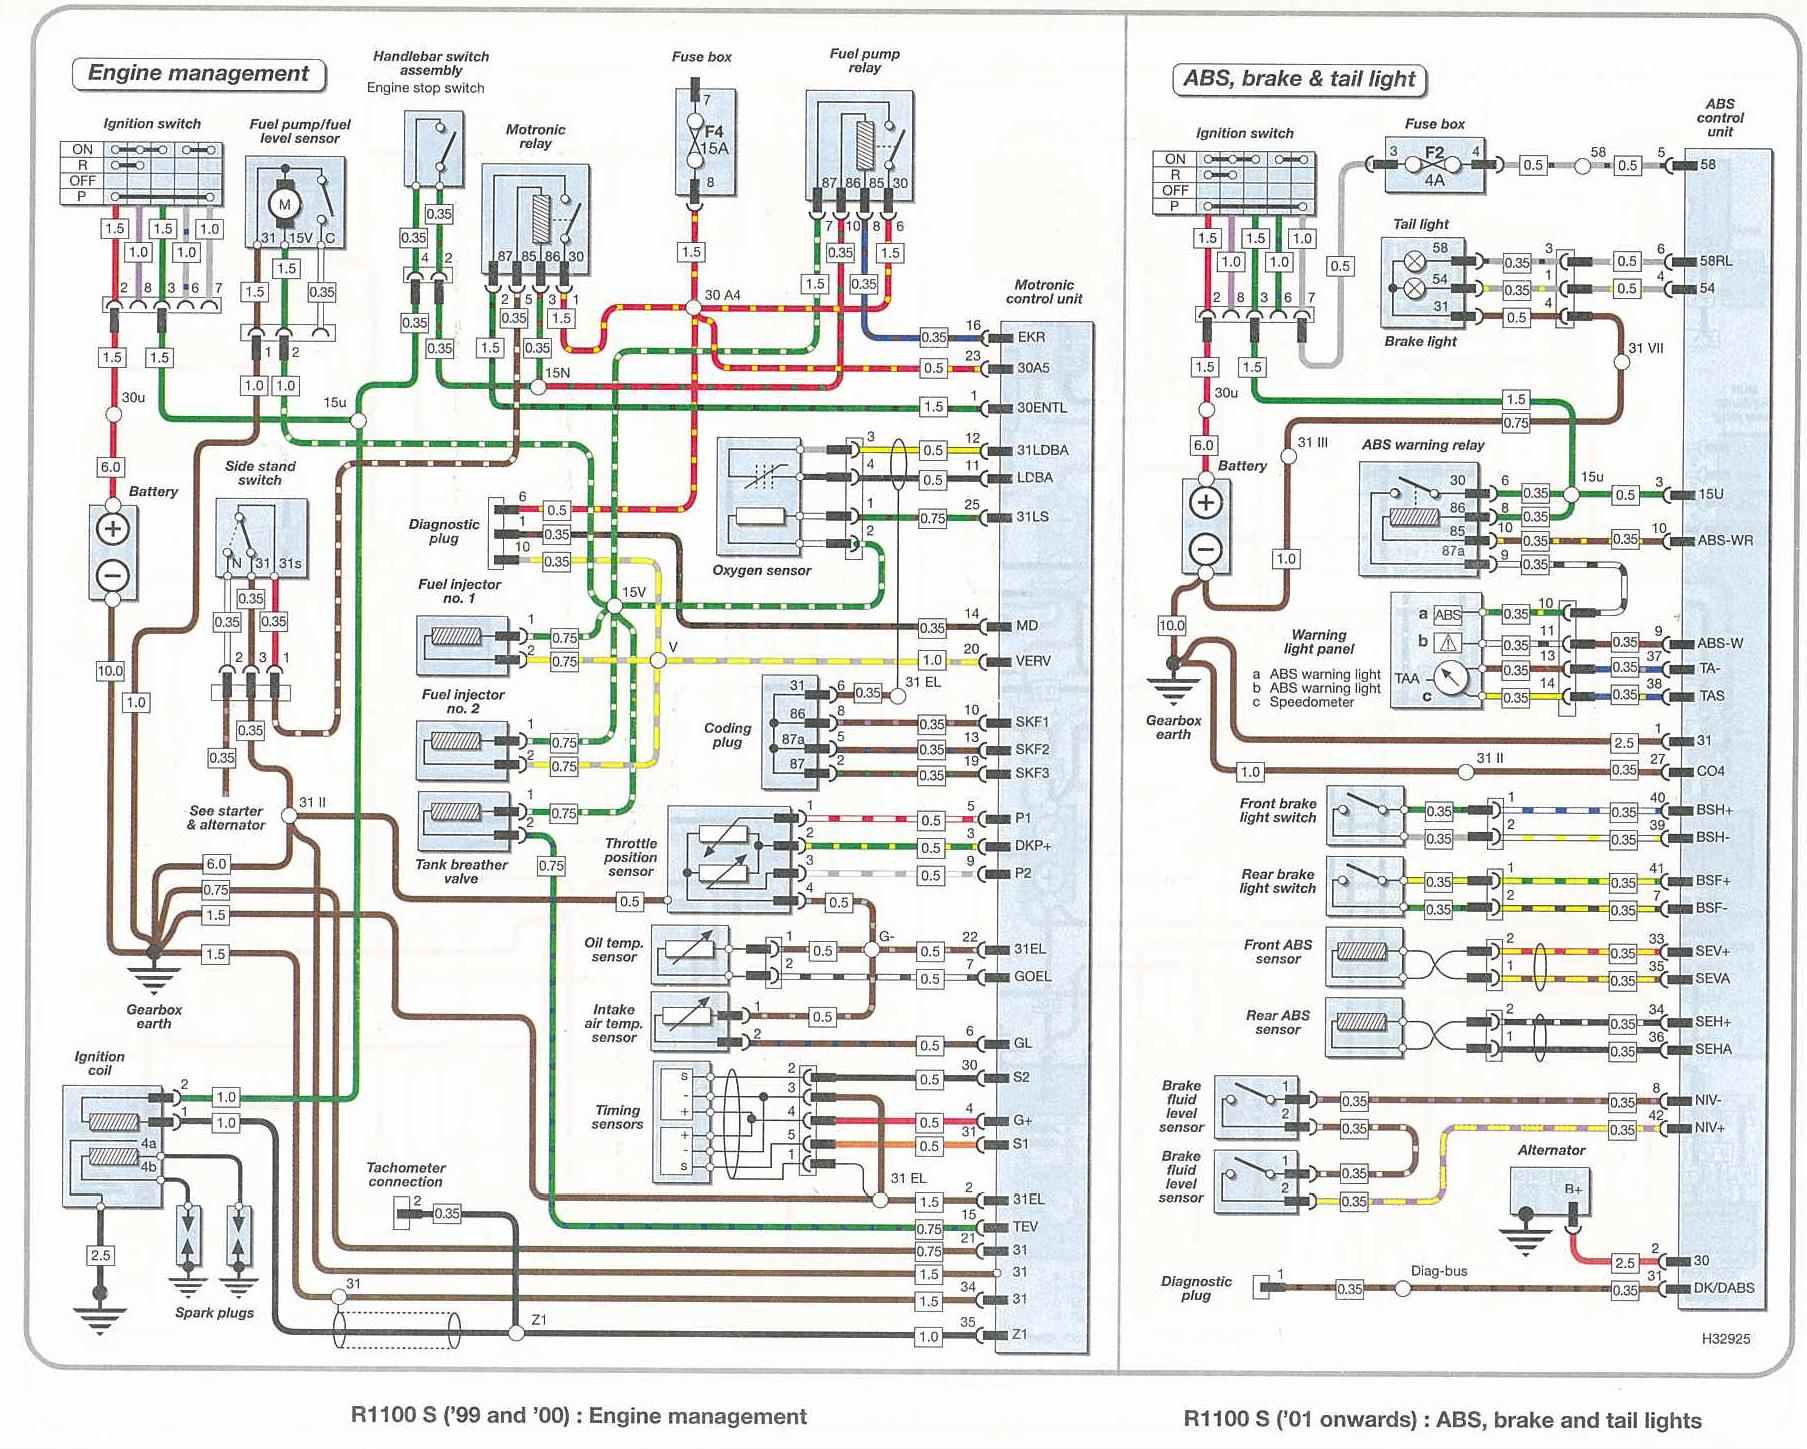 Stromsuchlaufpläne - Elektrik/Zündung/Beleuchtung/Motronic ... rz350 wiring diagram 